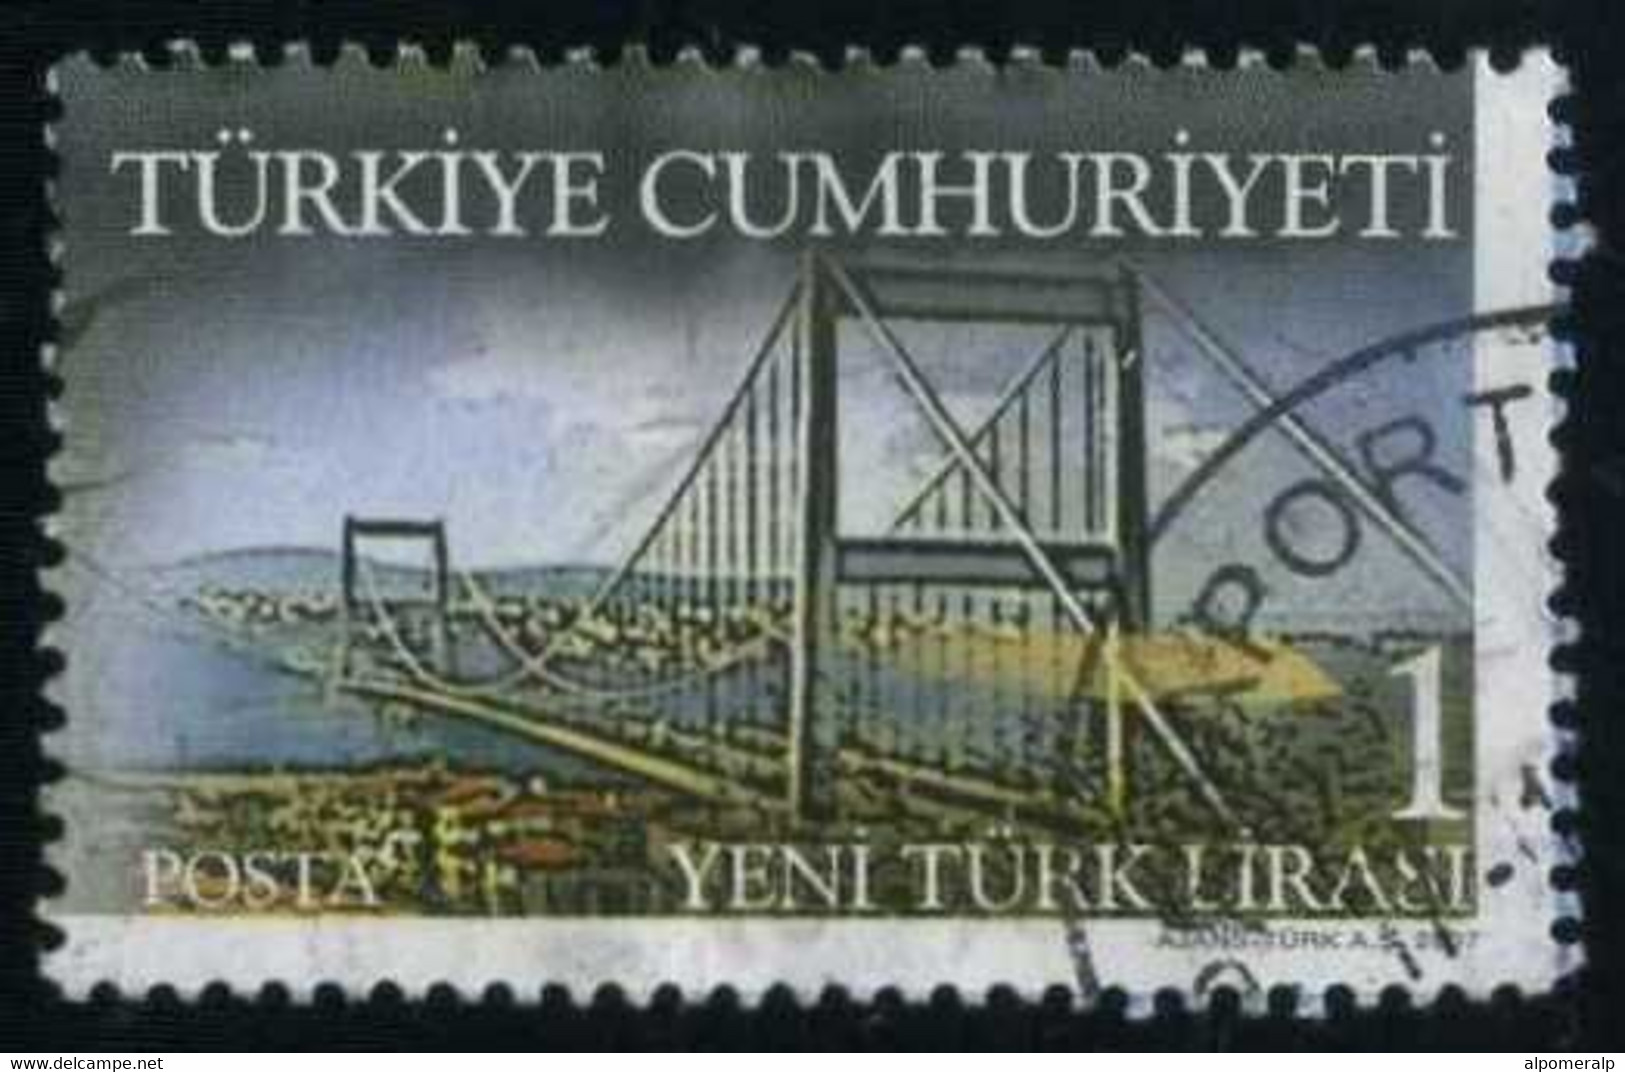 Türkiye 2007 Mi 3618 Bosphorus Bridge | Balkanfila Stamp Exhibition - Gebraucht